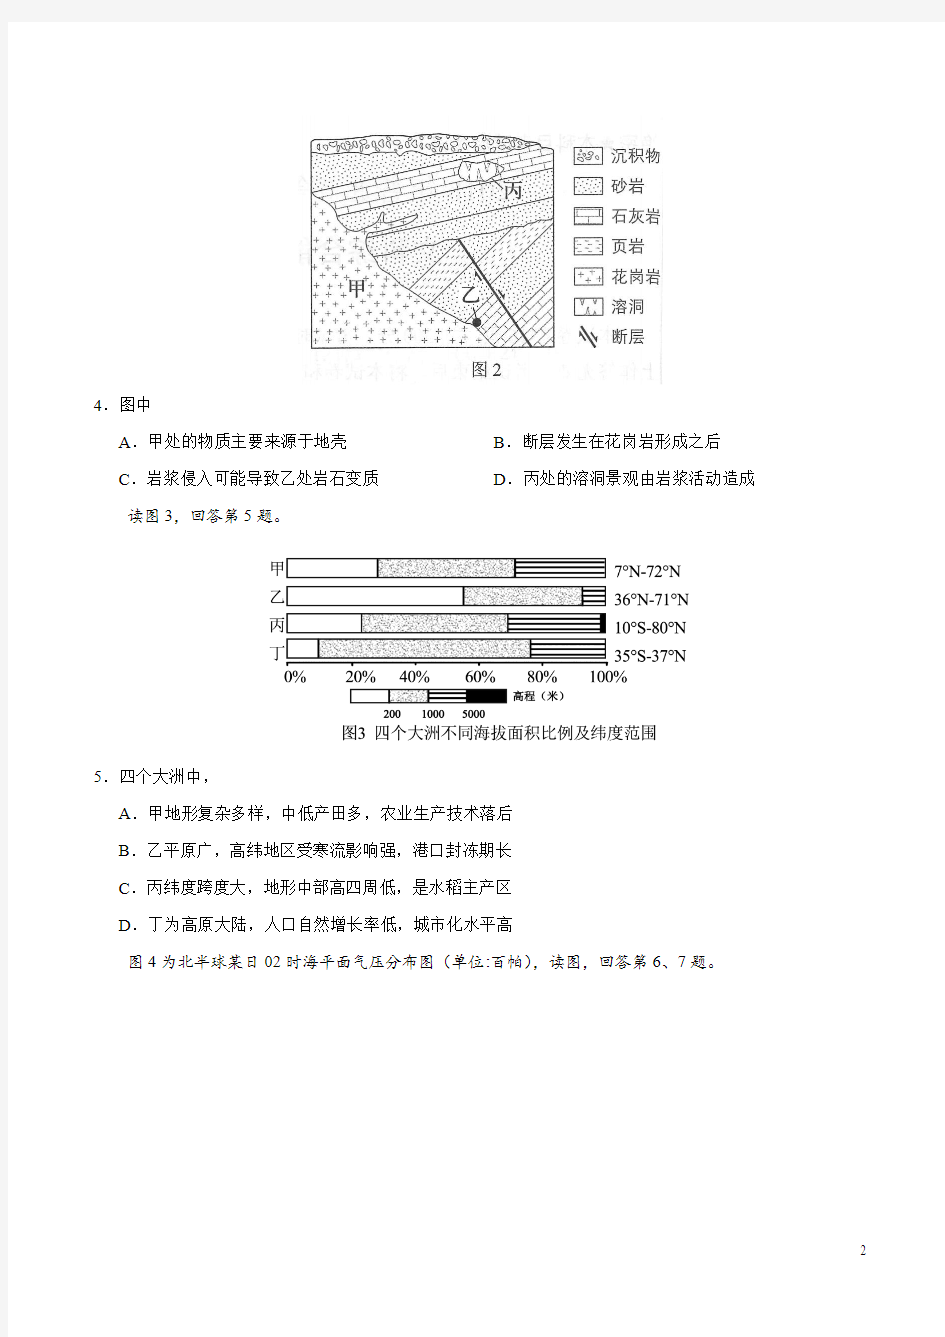 2018年高考地理北京卷(高清含官方答案)